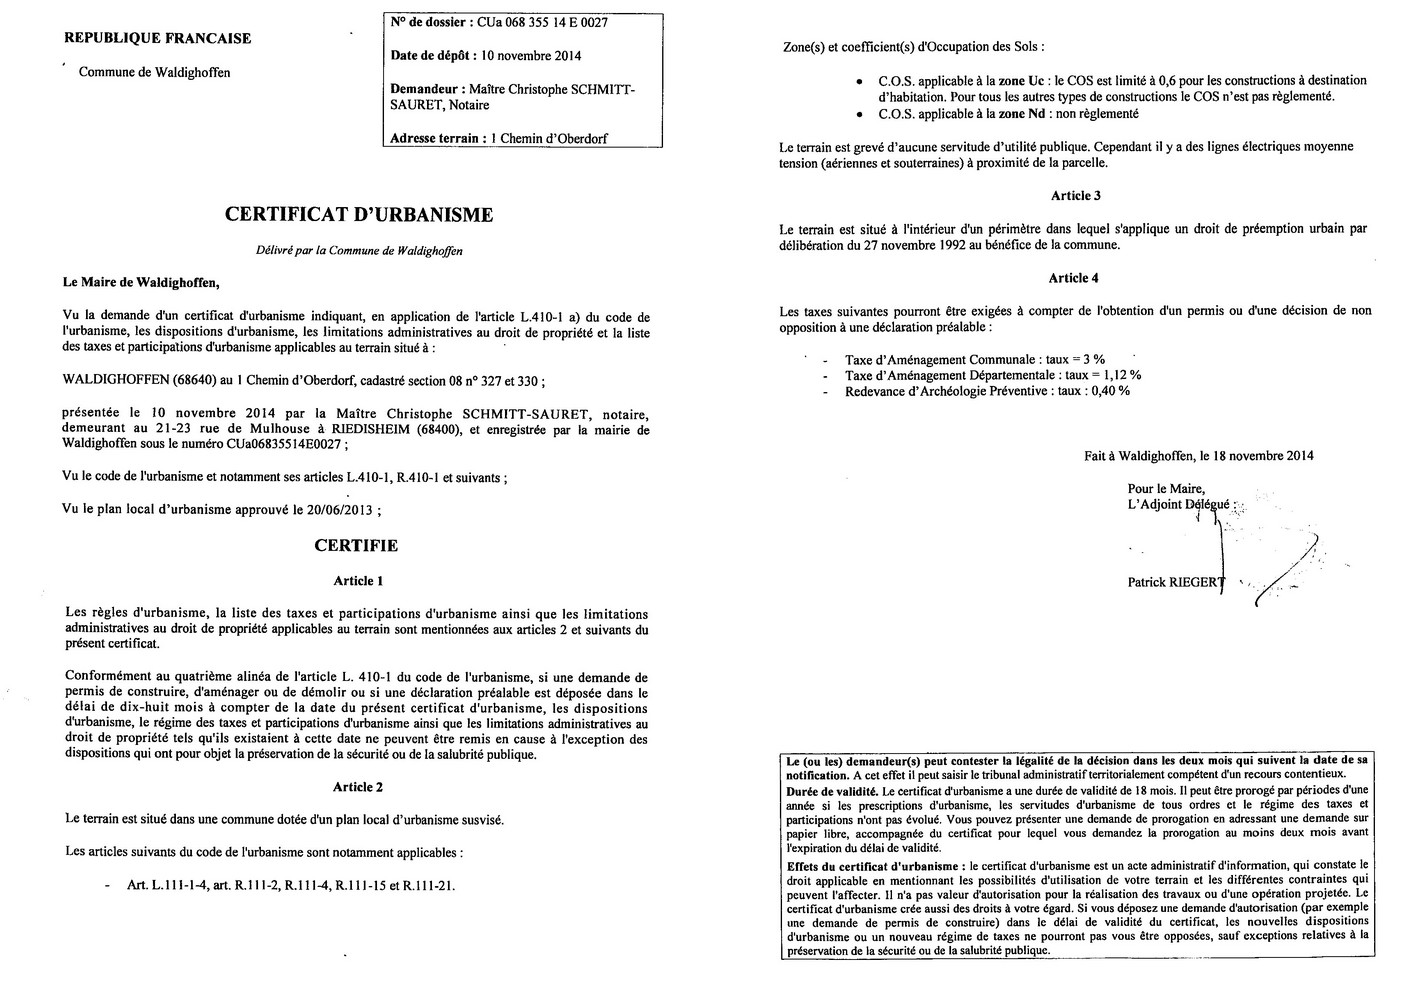 Certificat d'urbanisme délivré à Maître SCHMITT-SAURET, notaire